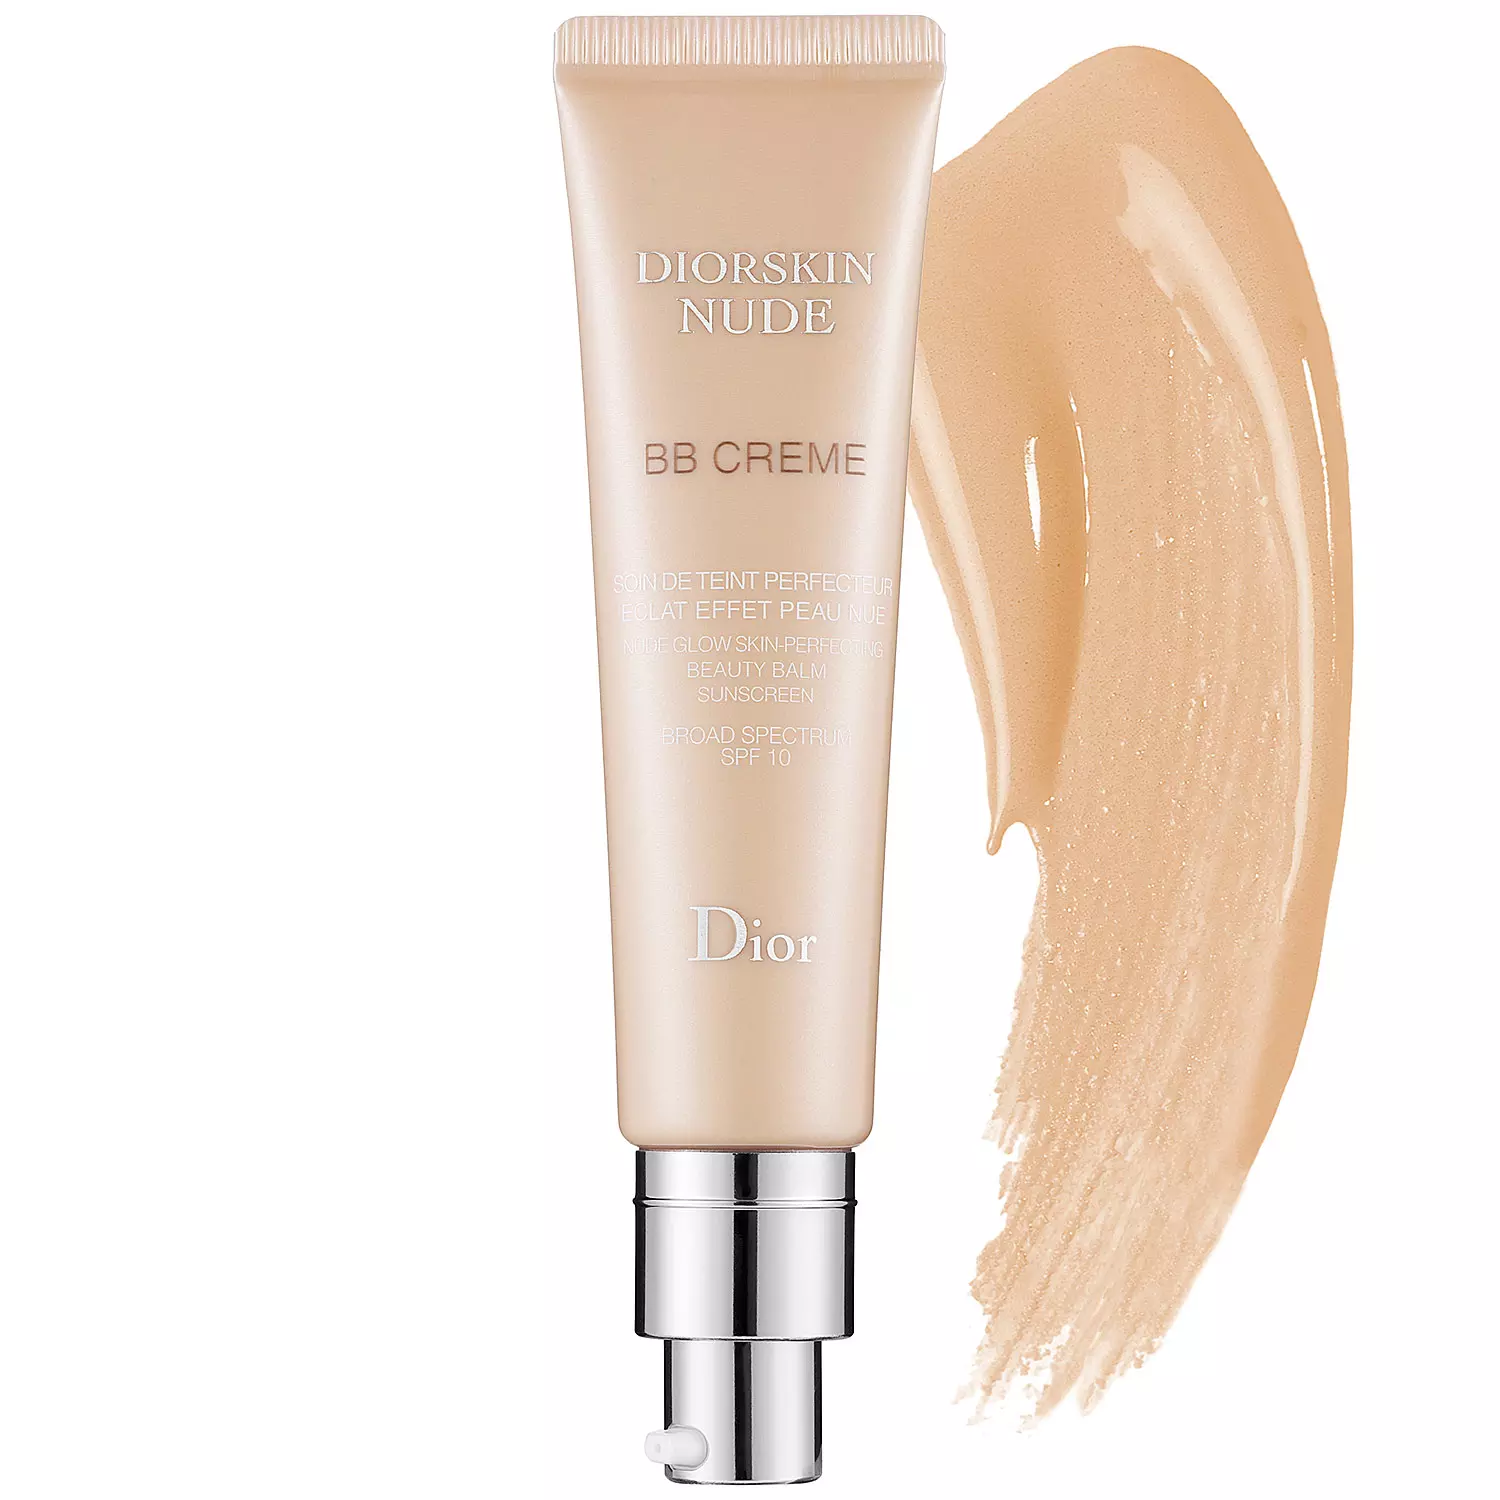 Dior Nude BB Creme 003 - Best deals on Dior